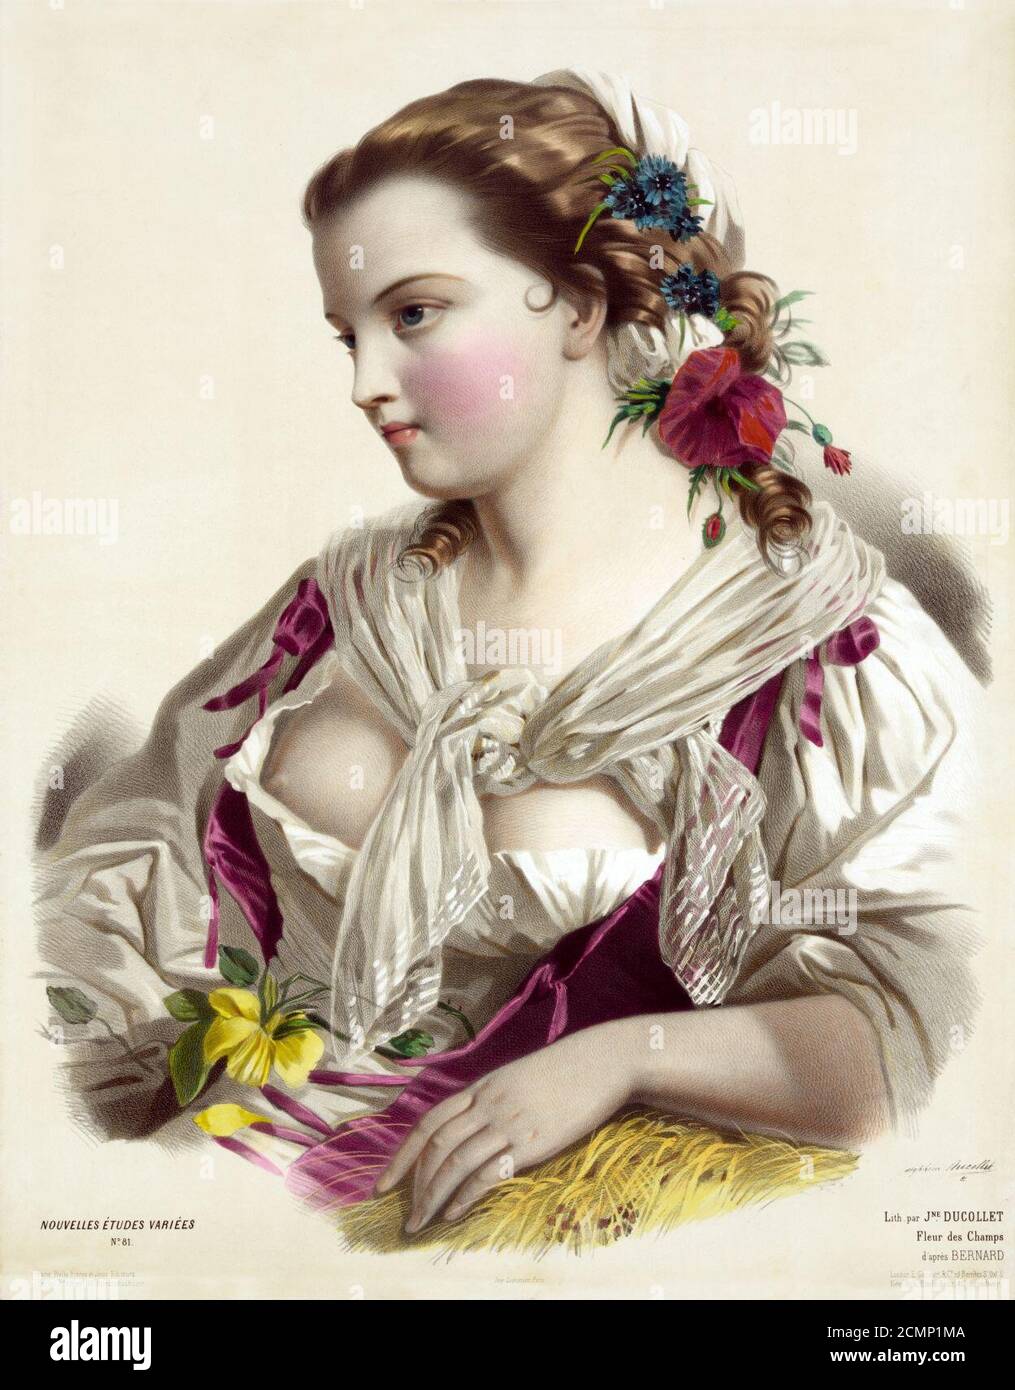 Joséphine Ducollet, Fleur des champs, nach Bernard, ca. 1856. Stockfoto